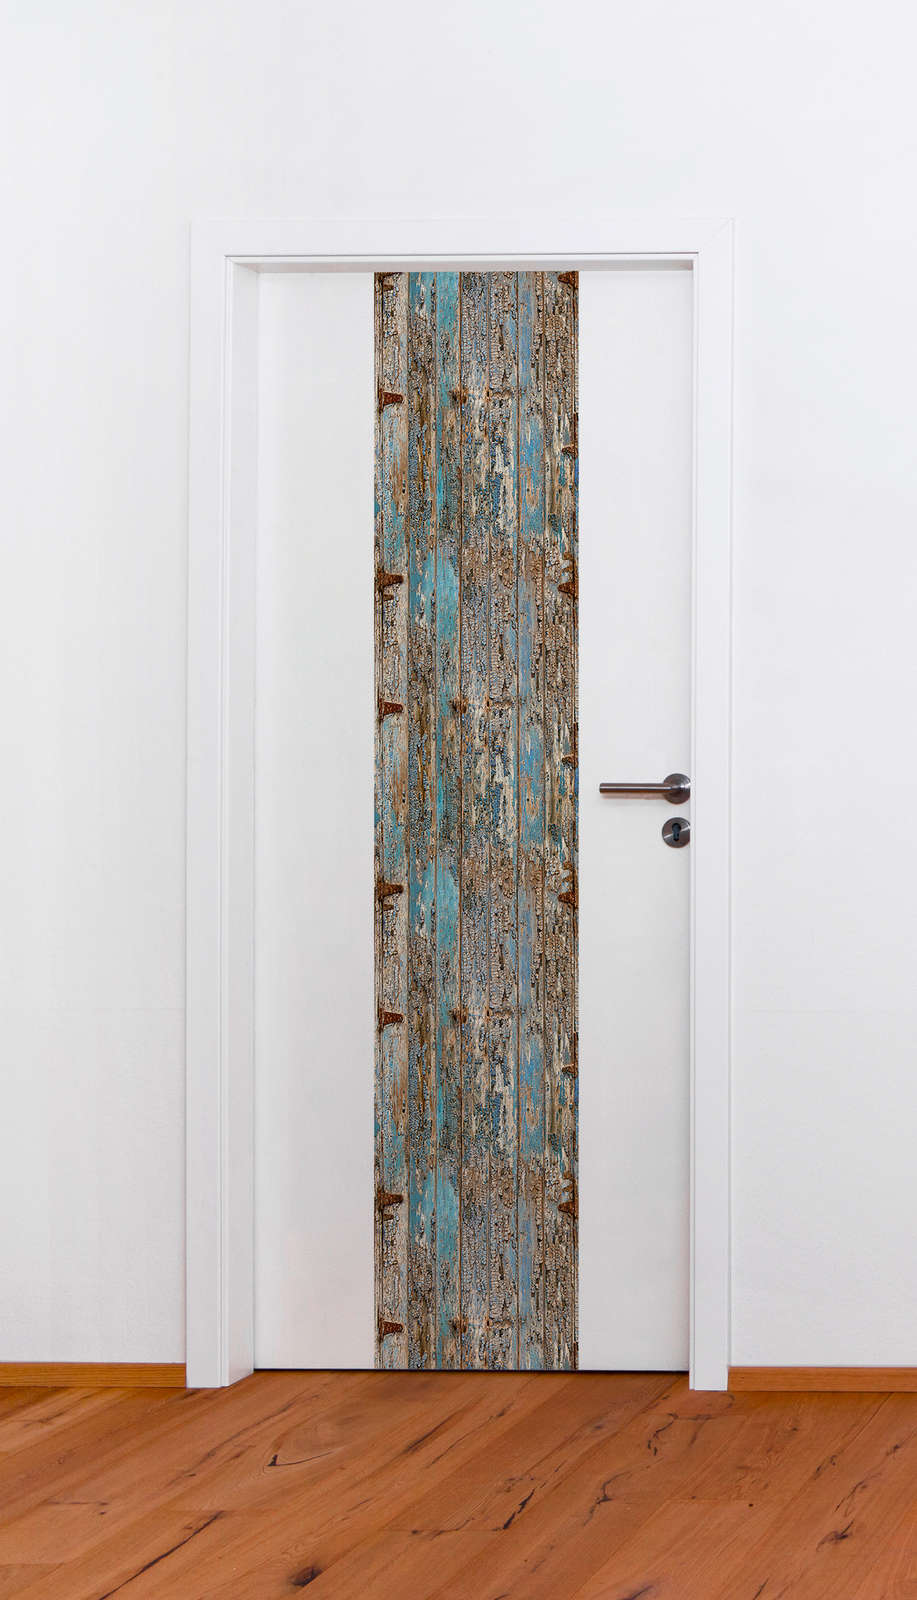             Tavole di legno in stile usato, Shabby Chic - Blu, Beige, Grigio
        